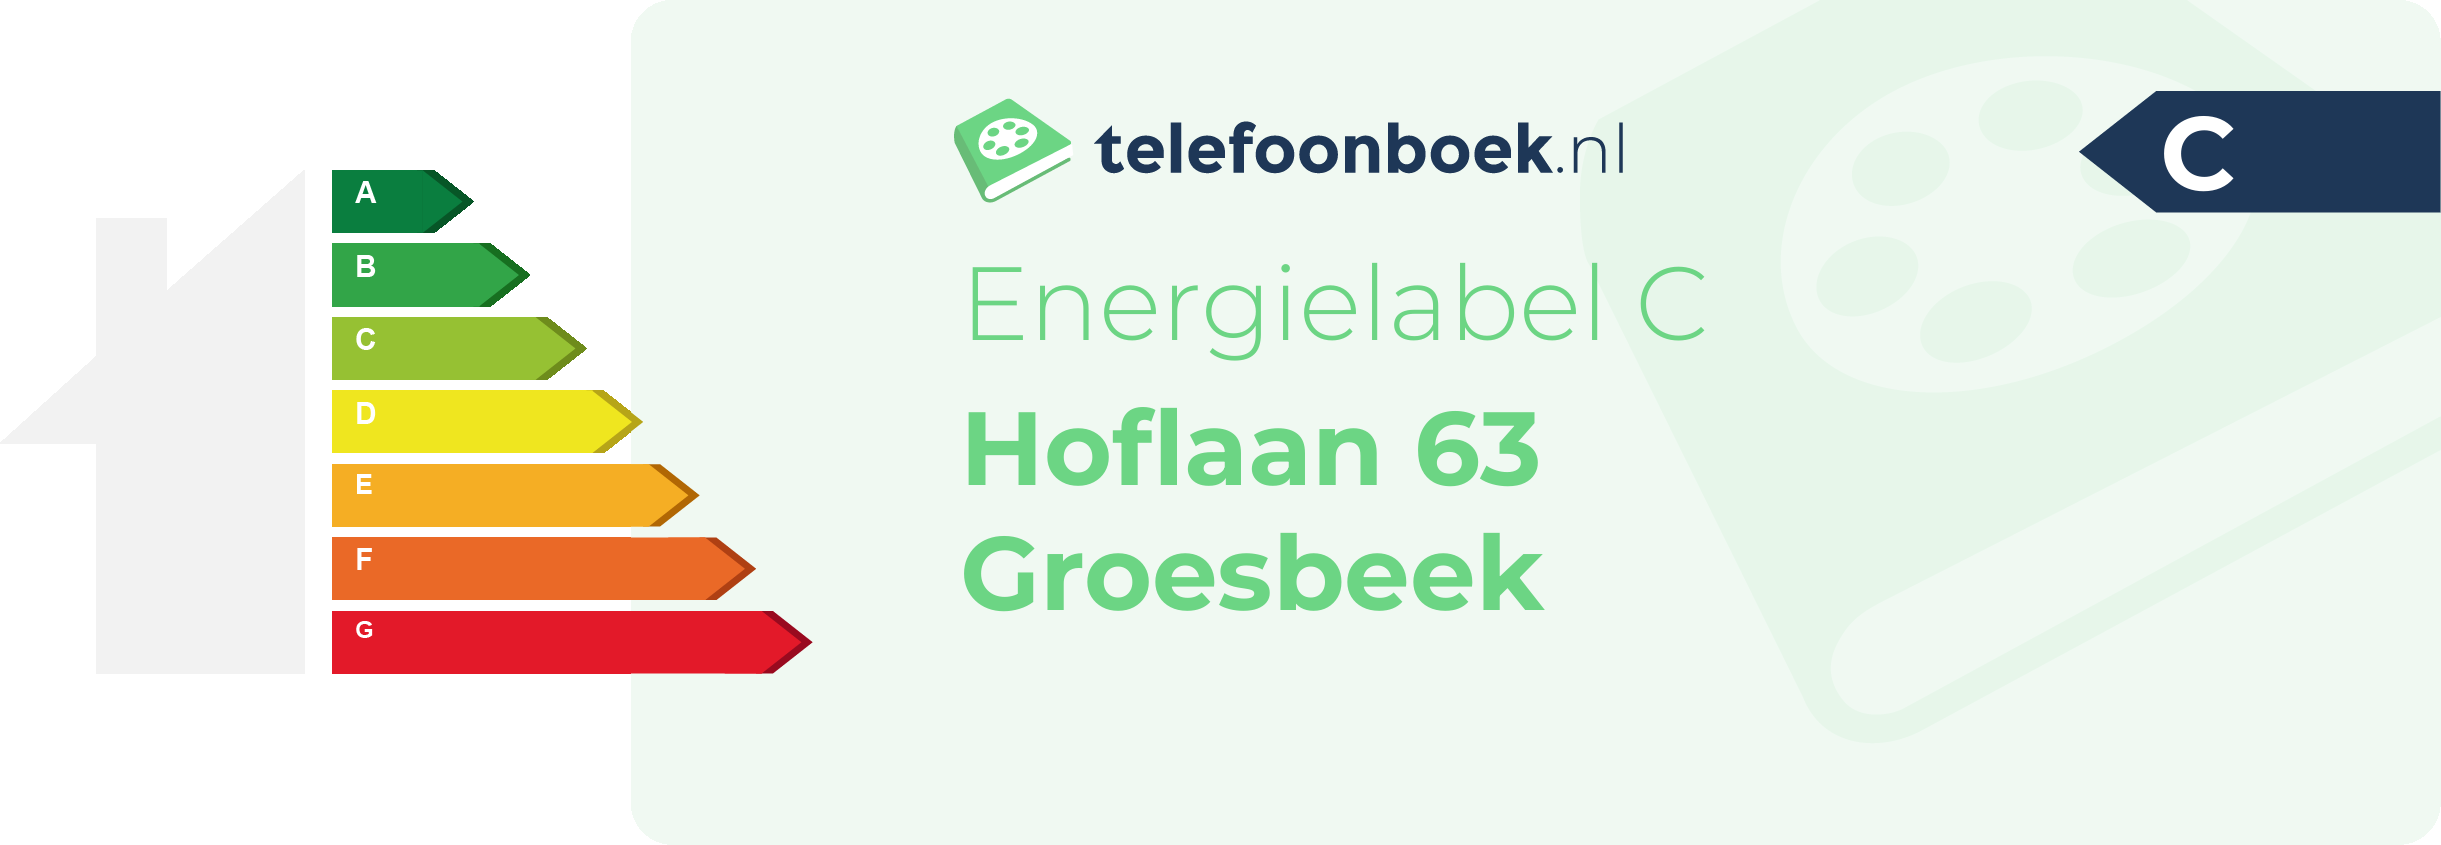 Energielabel Hoflaan 63 Groesbeek